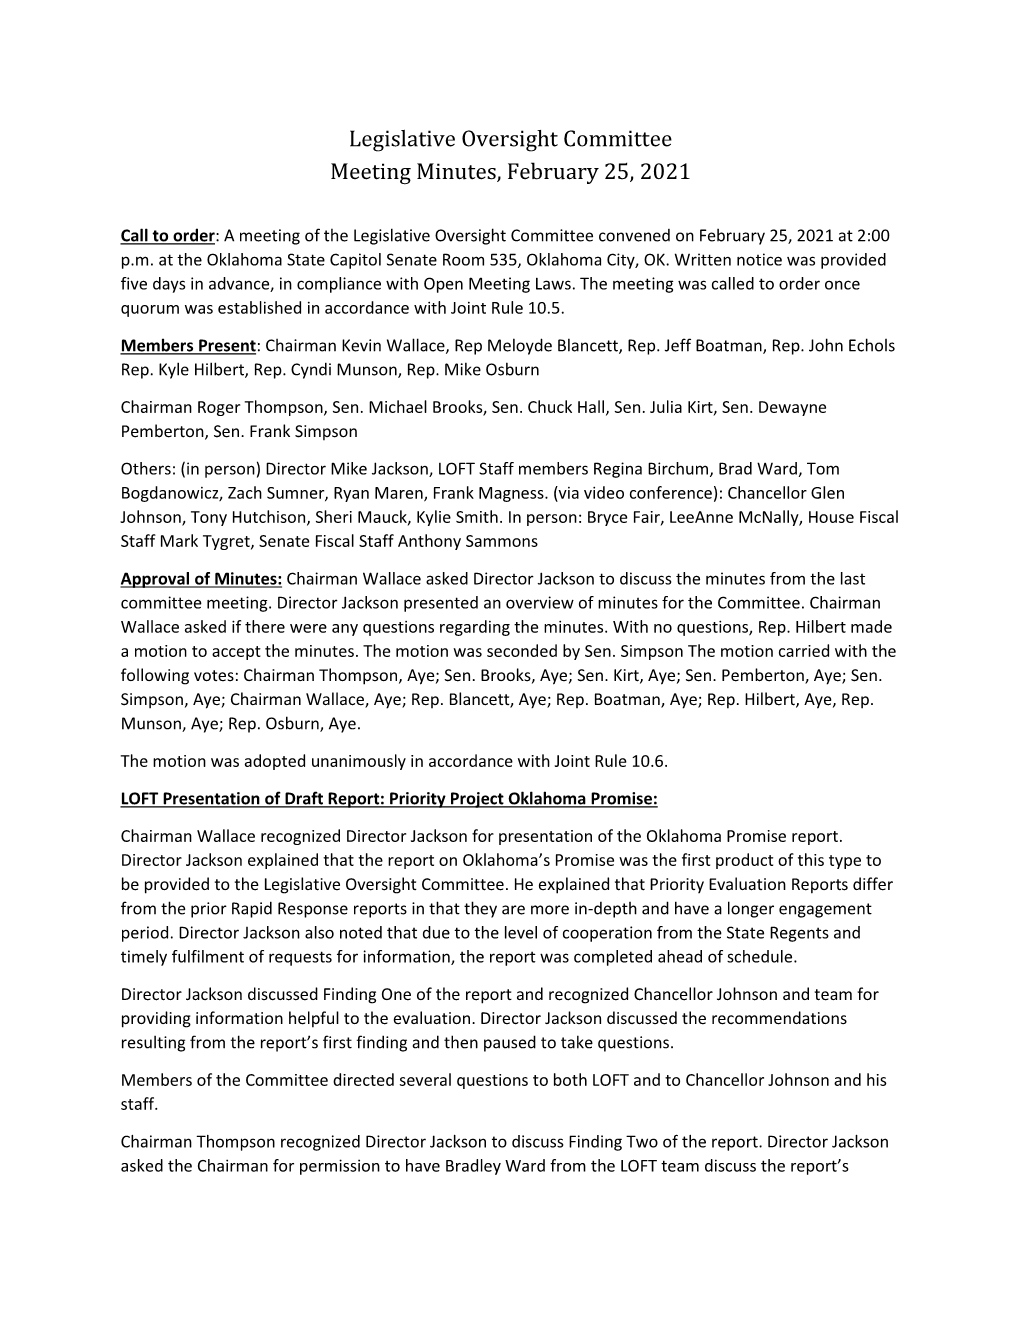 Legislative Oversight Committee Meeting Minutes, February 25, 2021